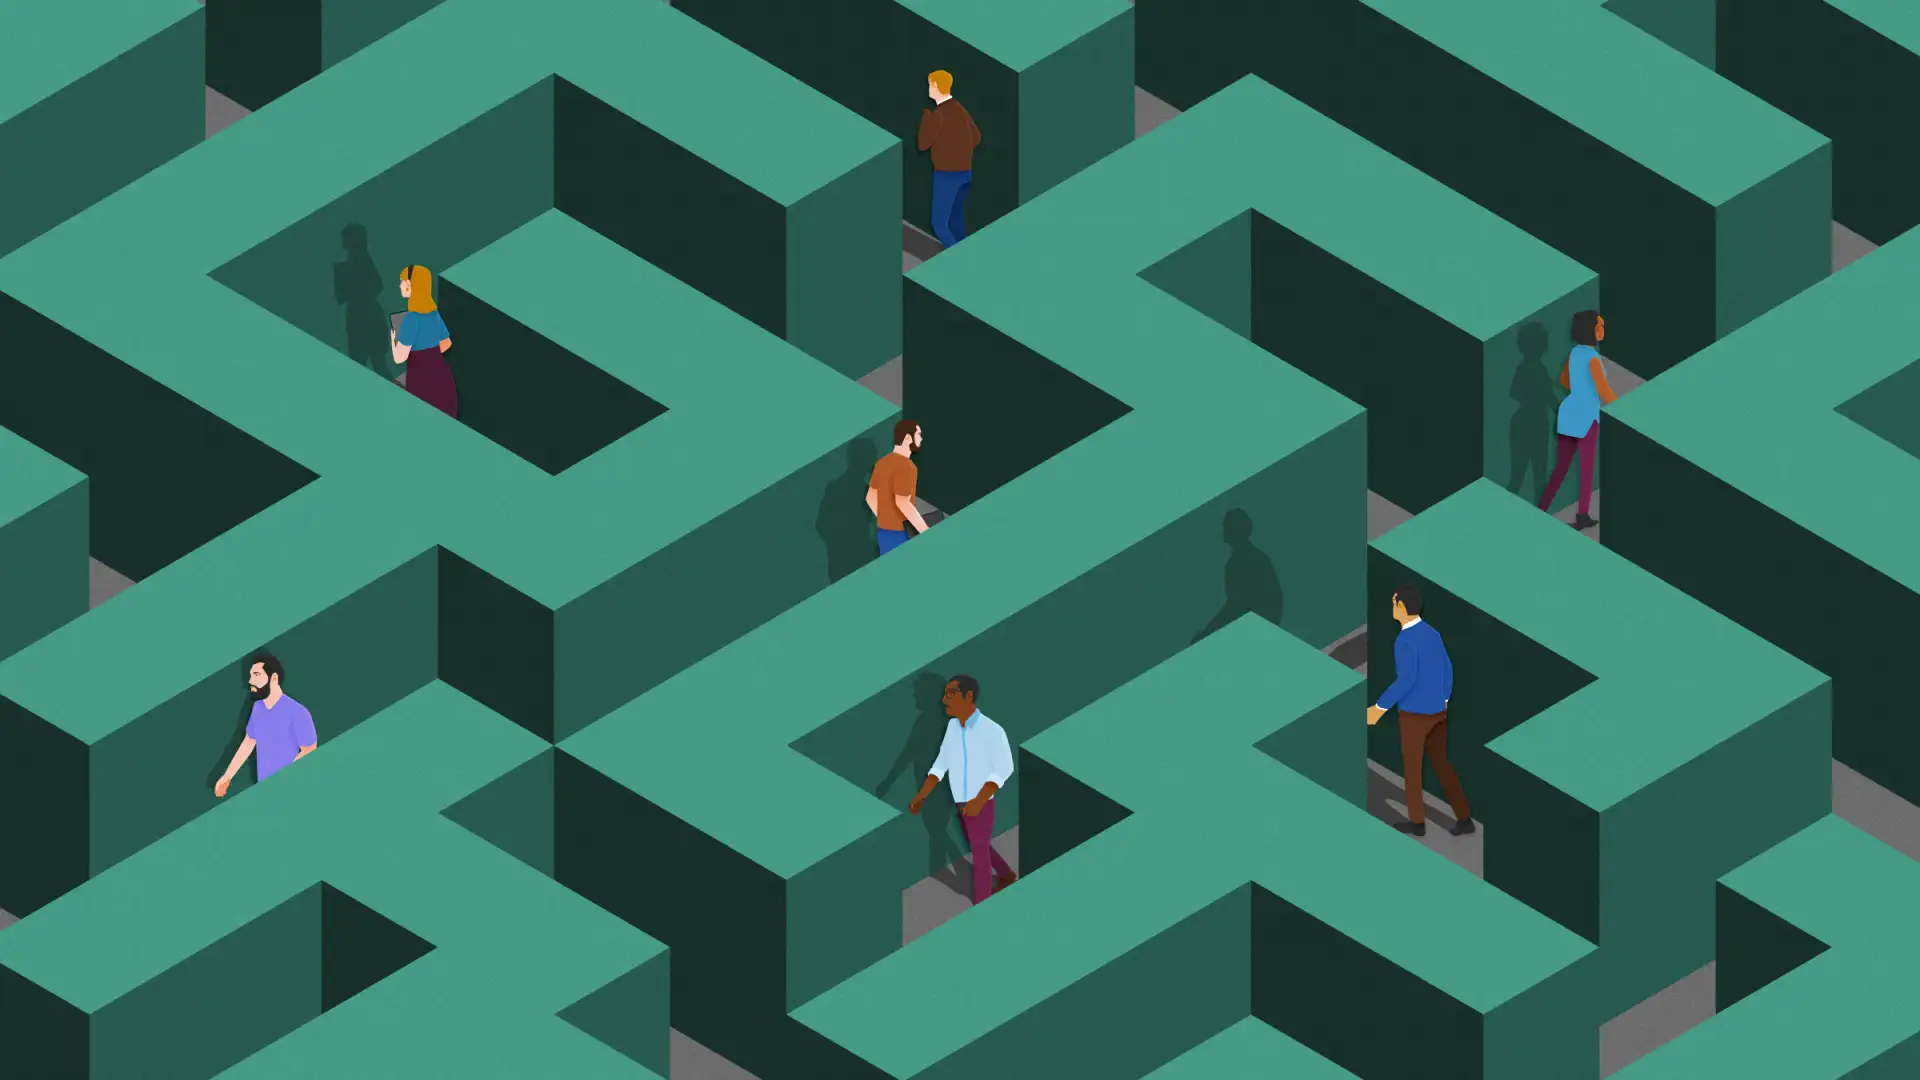 People wander in a maze